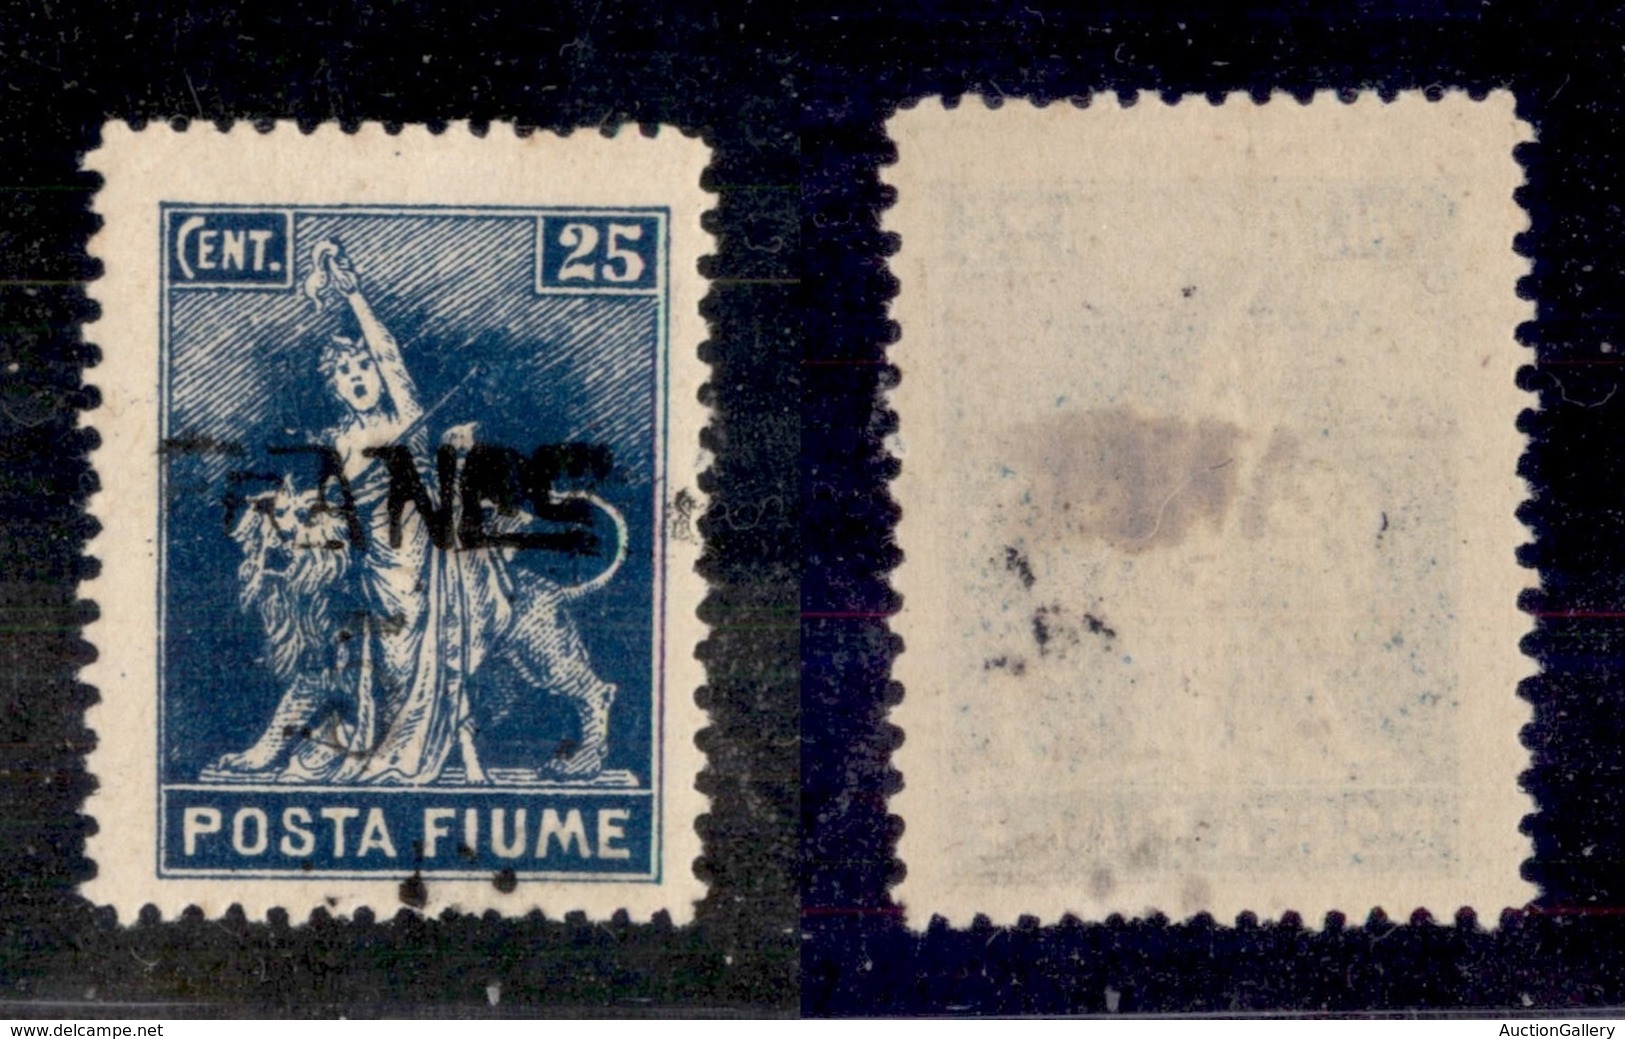 OCCUPAZIONI - FIUME - 1919 - Franco 5 Su 25 Cent (D76) - FR + Cifra Evanescenti + Punti D’inchiostrazione In Basso - Gom - Fiume